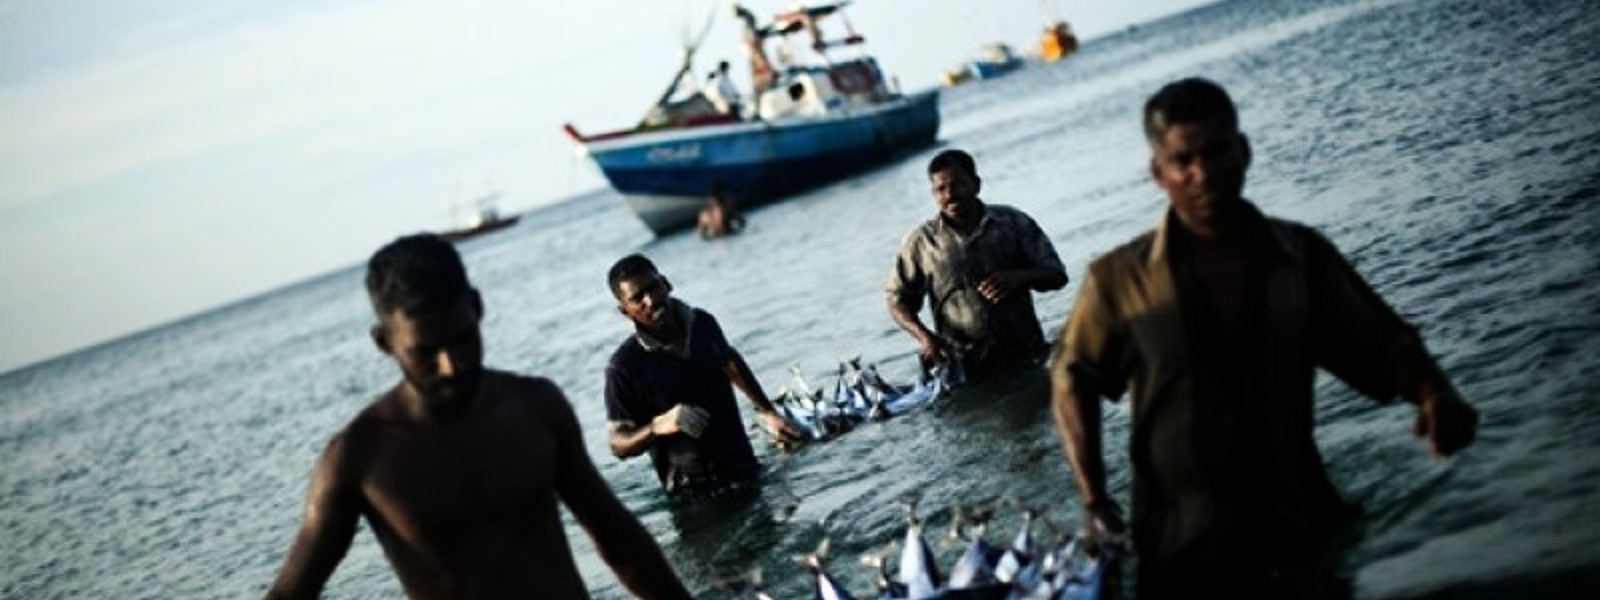 Electric motor boats for Sri Lankan fishermen